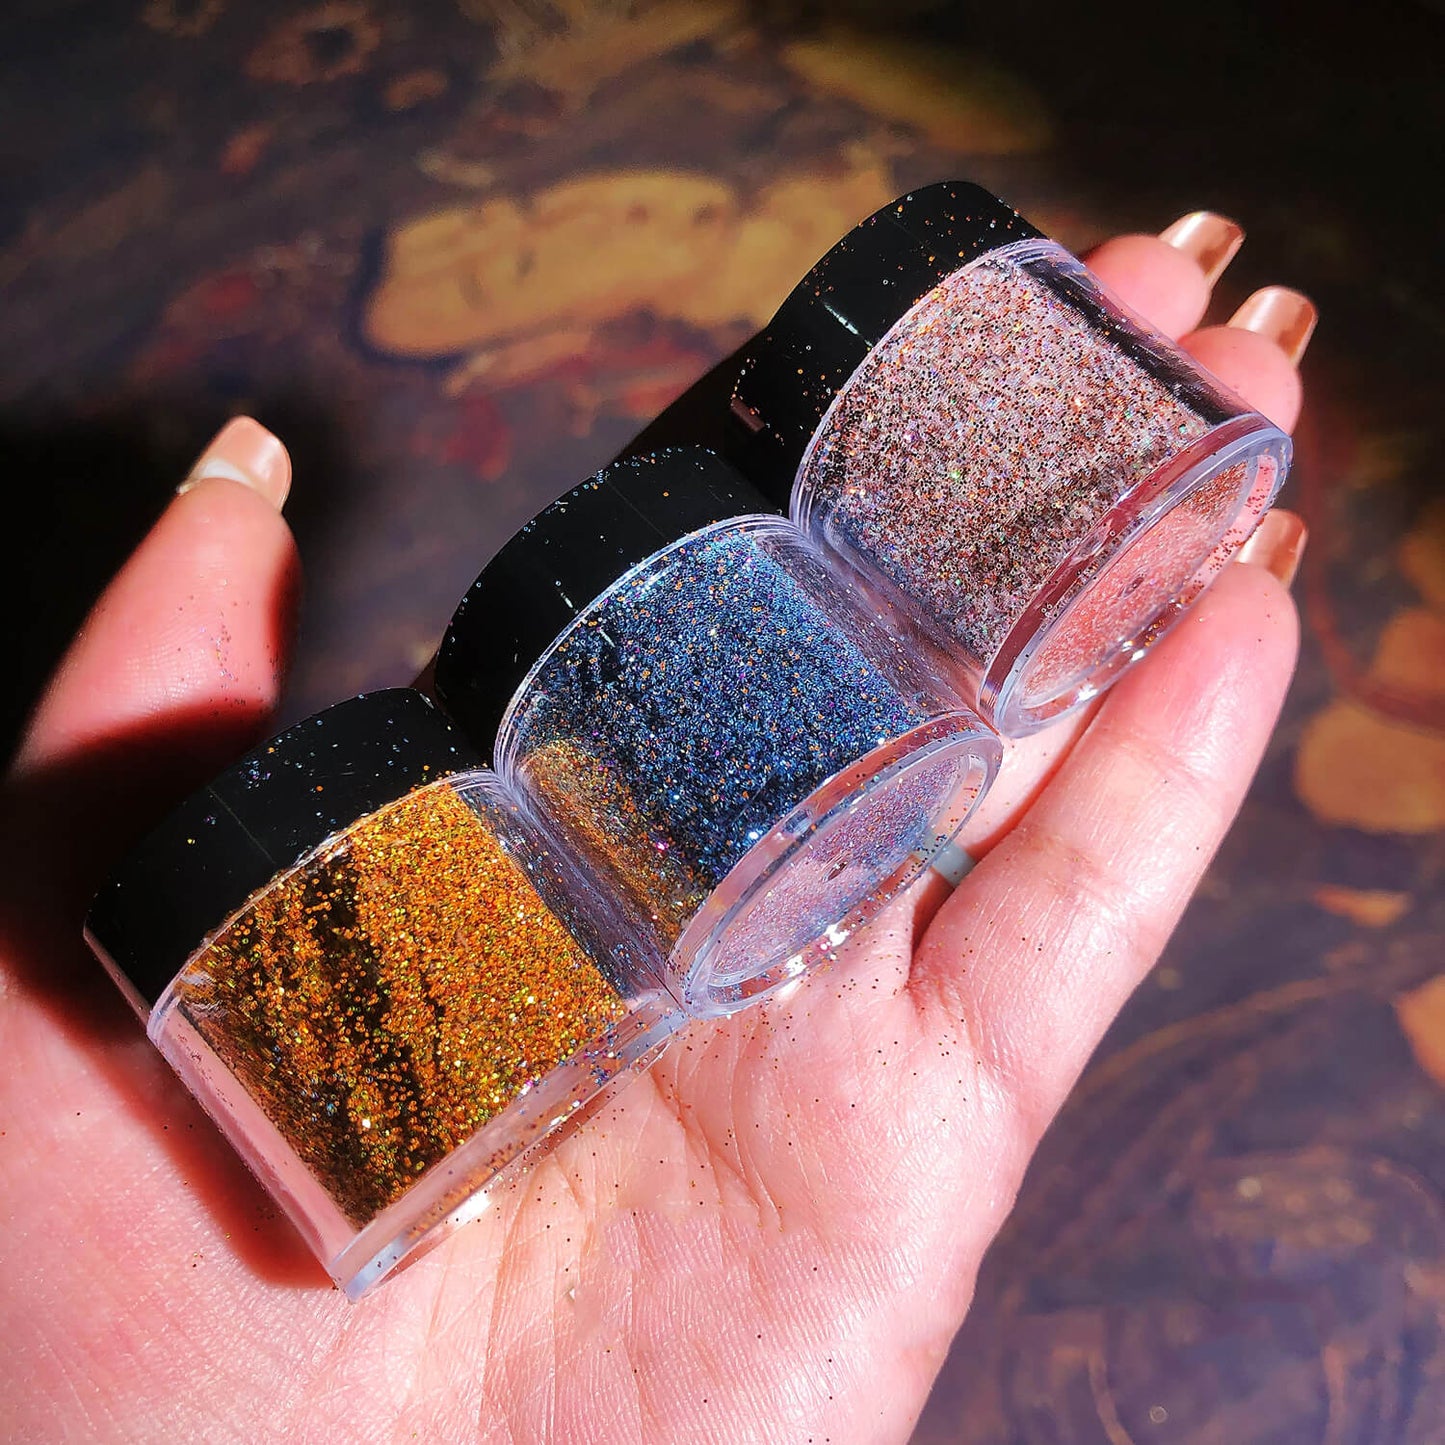 IntoResin 14 Colors Chameleon Glitter for Resin